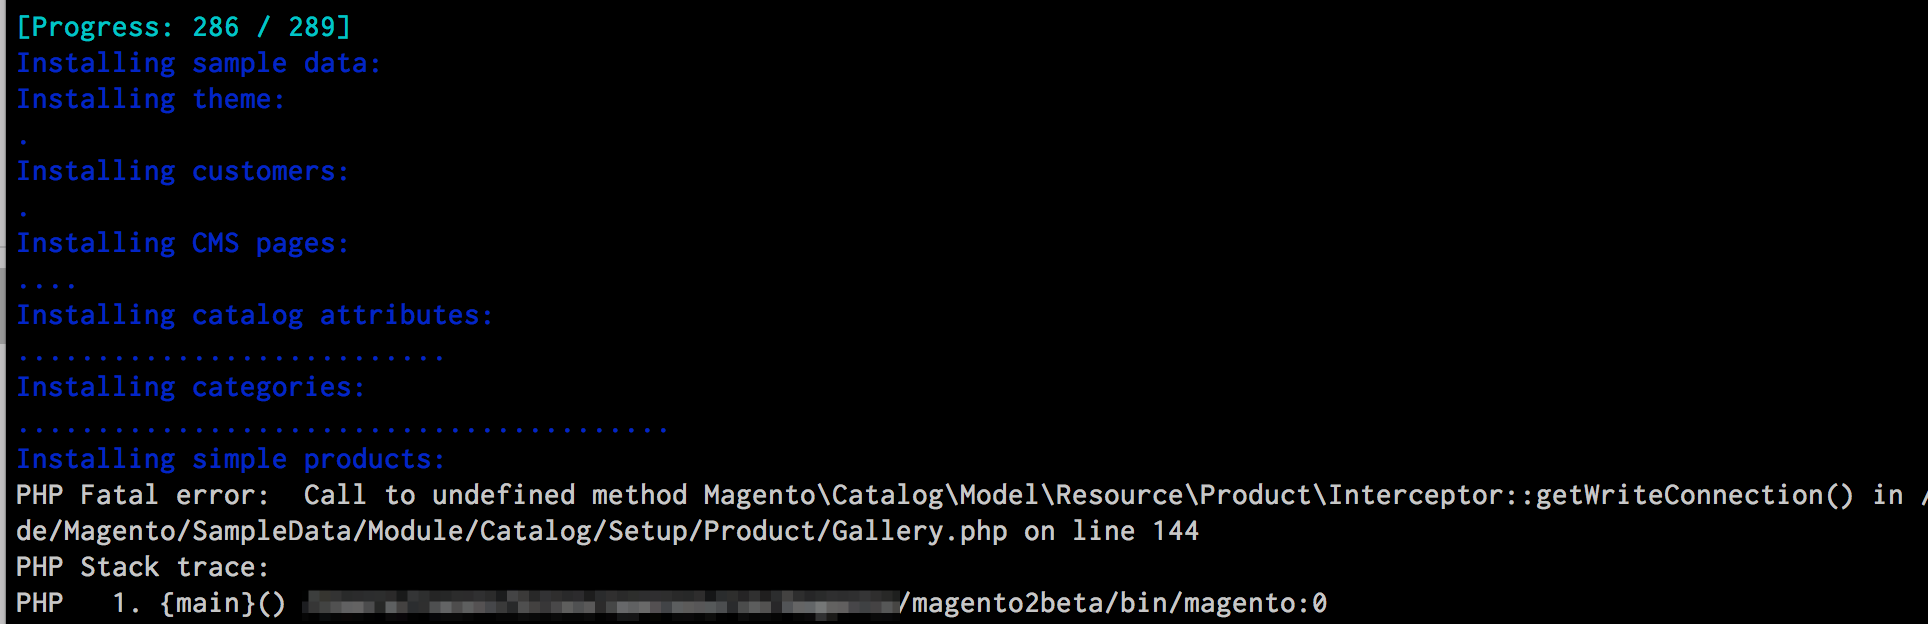 Sample data installation error in Magento 2